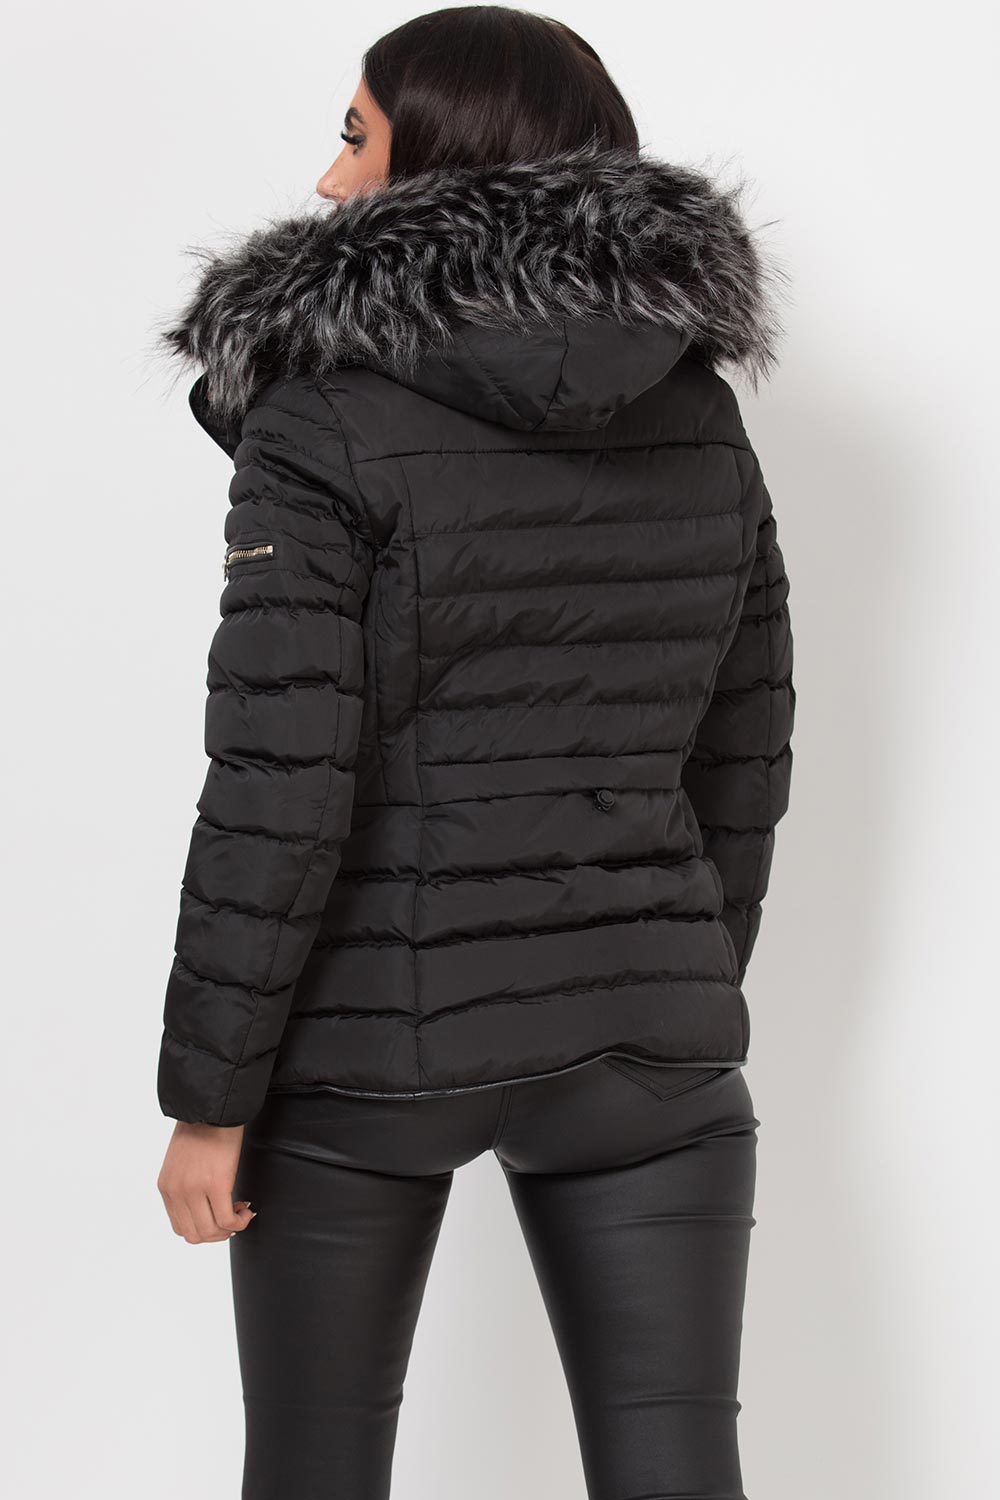 Women's Hooded Puffer Jacket Black Winter Coat –